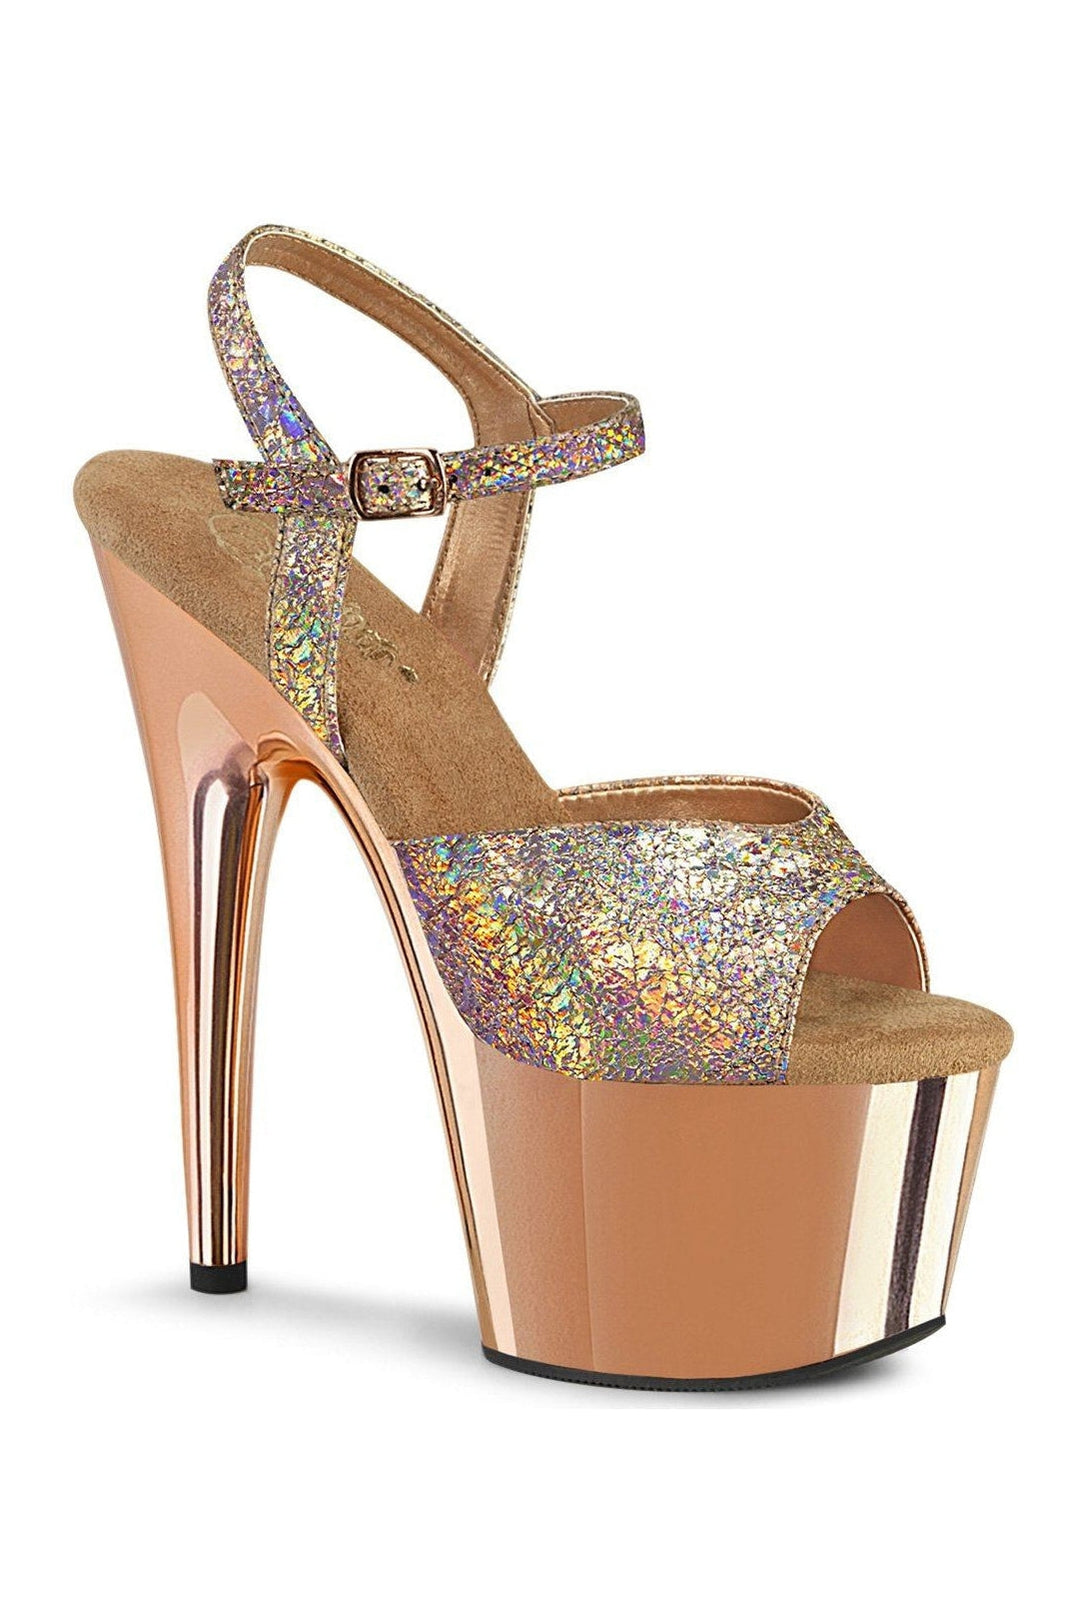 Pleaser Rose Gold Sandals Platform Stripper Shoes | Buy at Sexyshoes.com